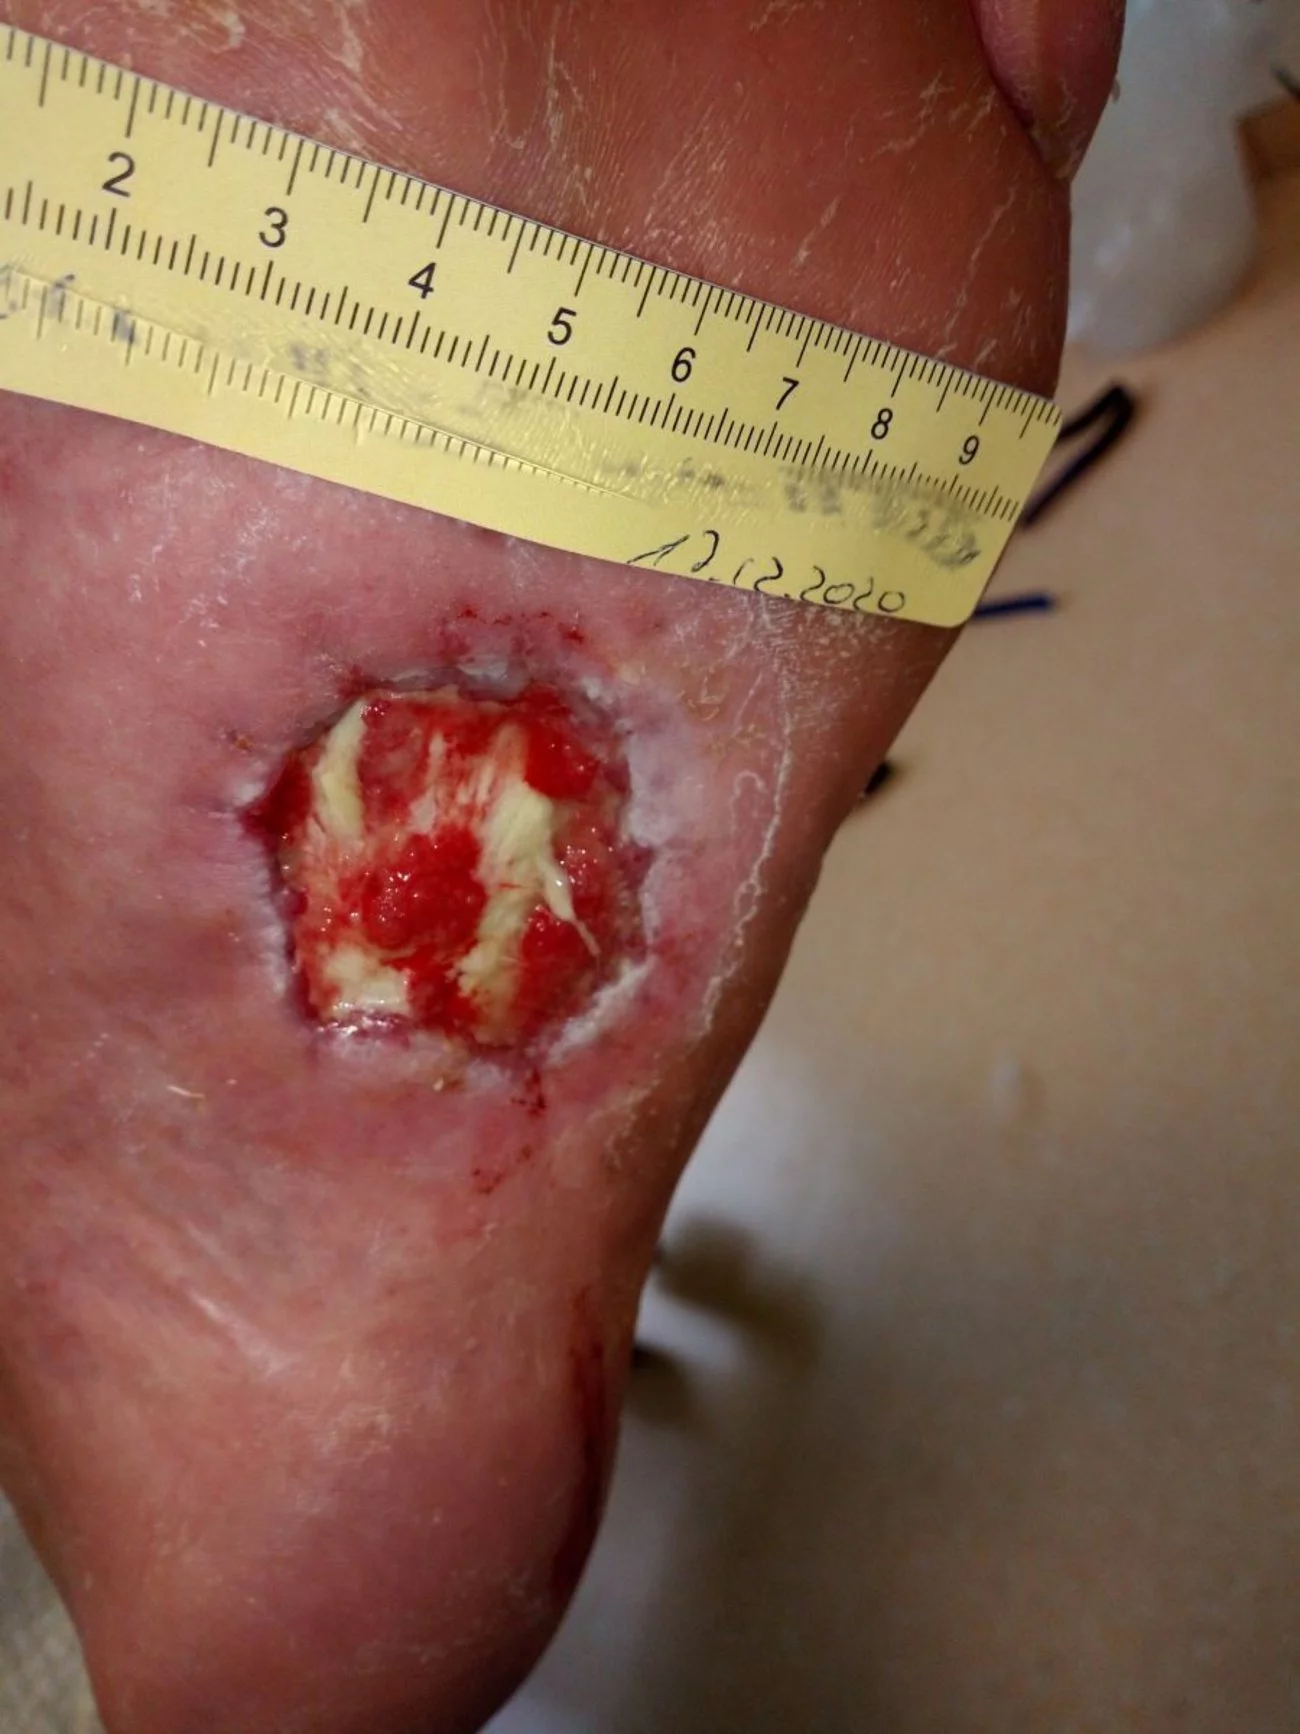  Diabetisches Fußulcus mit Granulationsgewebe